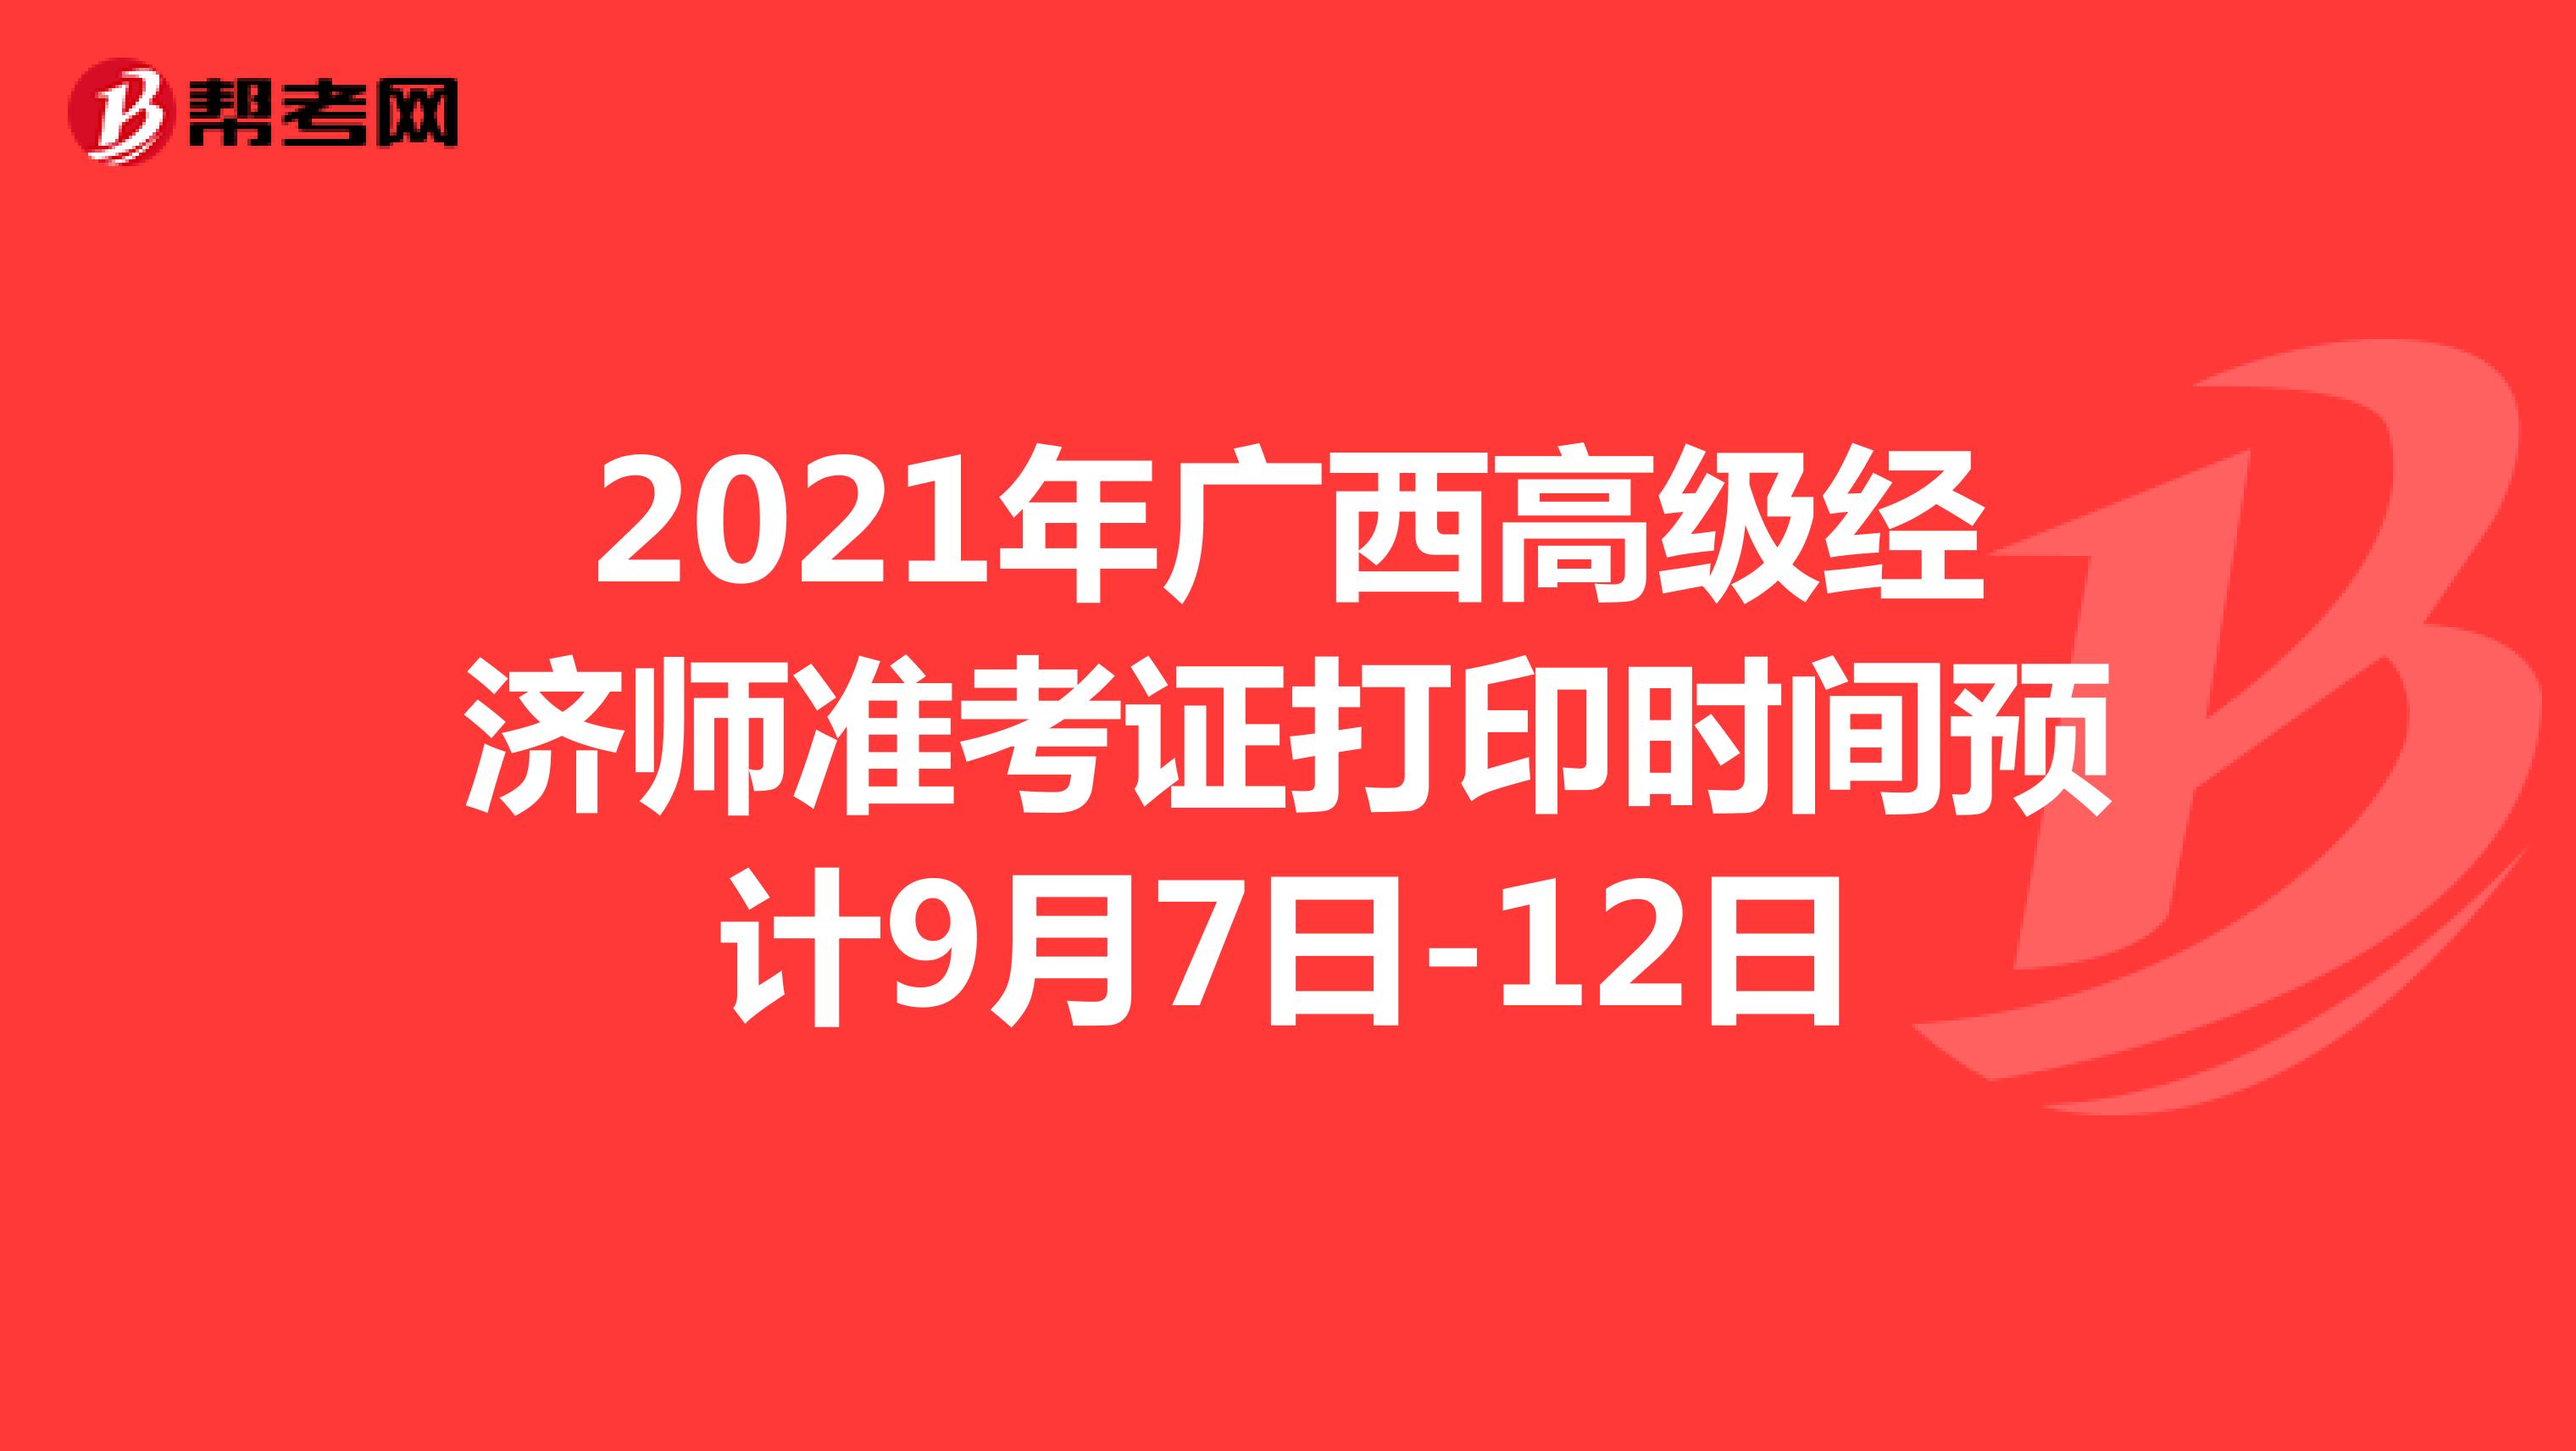 2021年广西高级经济师准考证打印时间预计9月7日-12日